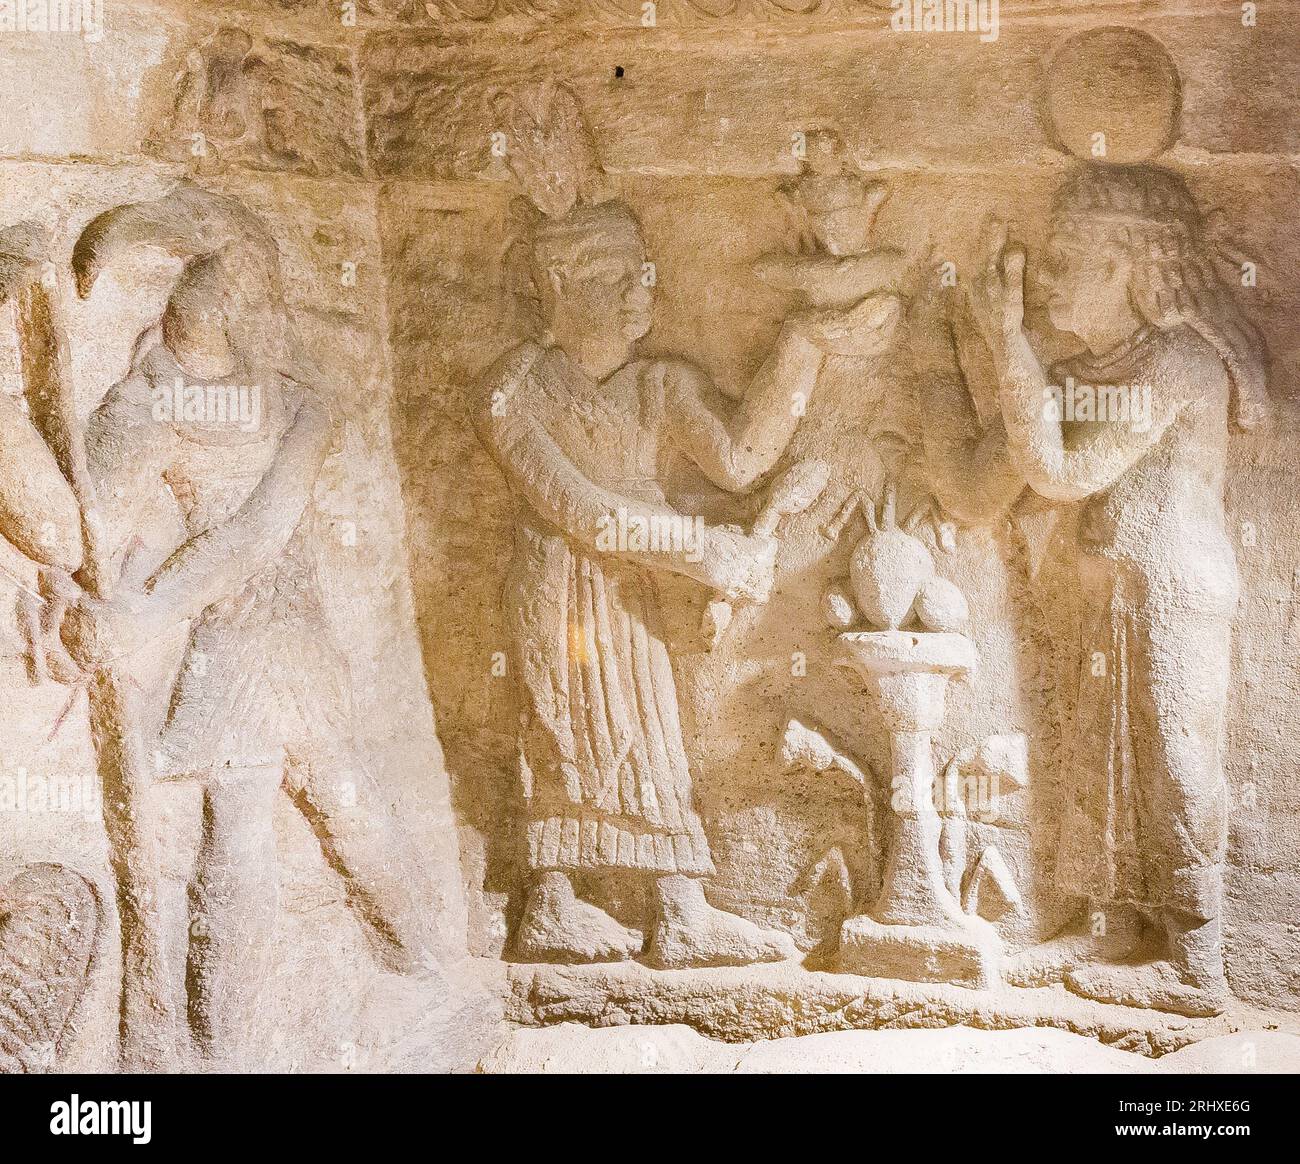 KOM el Shogafa Nekropolis, Hauptgrab, Hauptraum, zentrale Nische, rechte Wand: Ein Priester opfert einer weiblichen Figur (nicht eindeutig identifiziert). Stockfoto